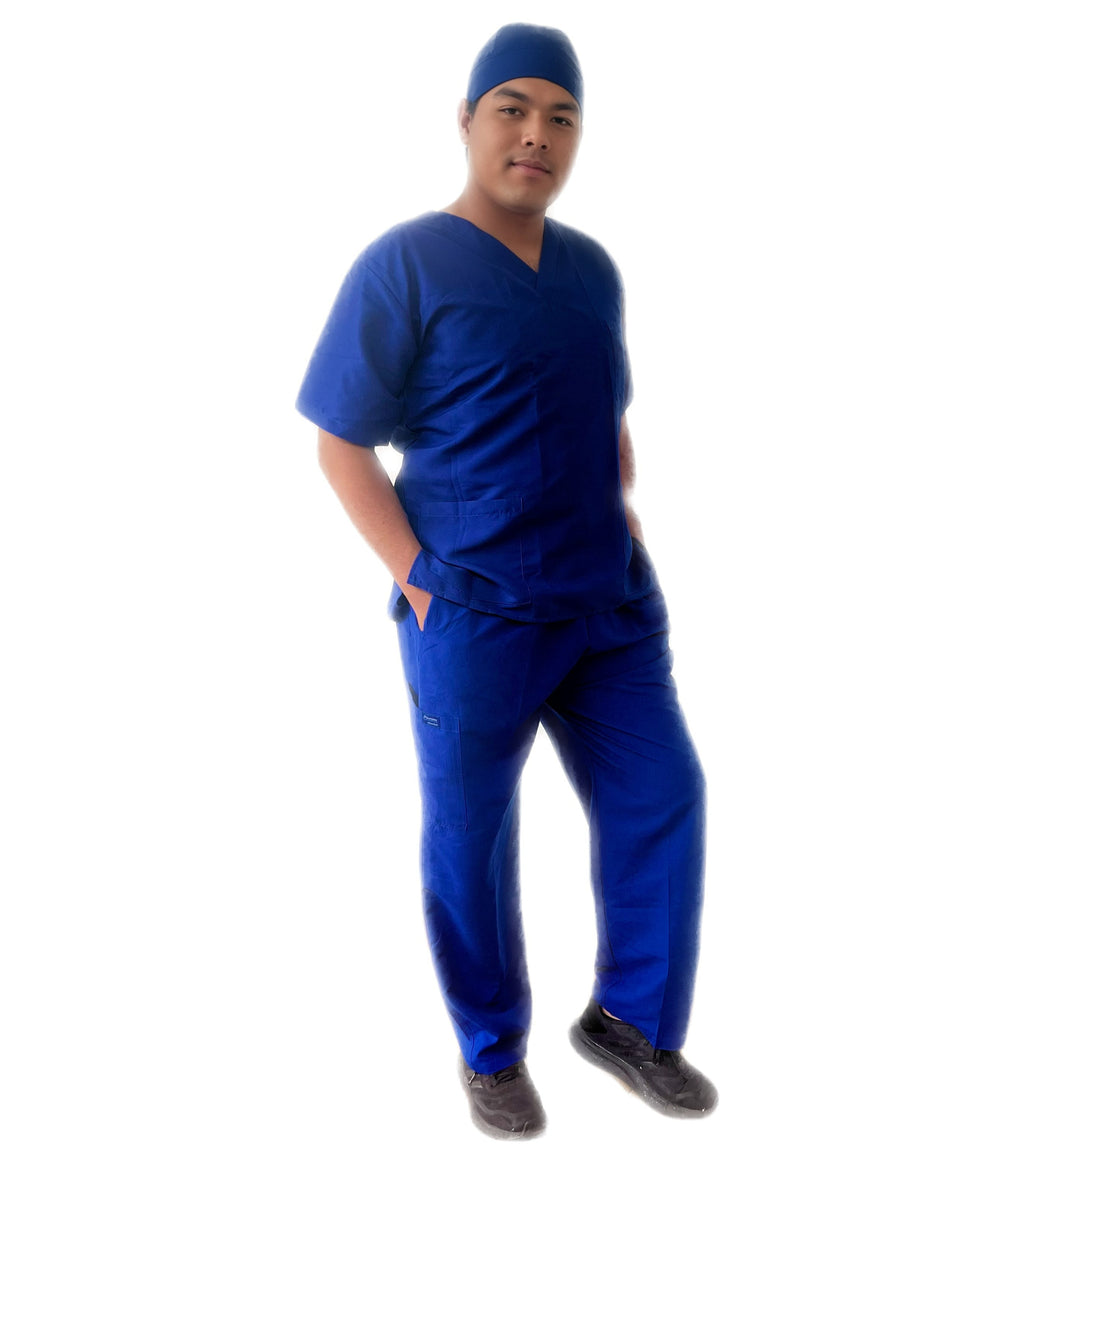 Pantalón quirúrgico de hombre STANFORD AMPLIO repelente para trabajo